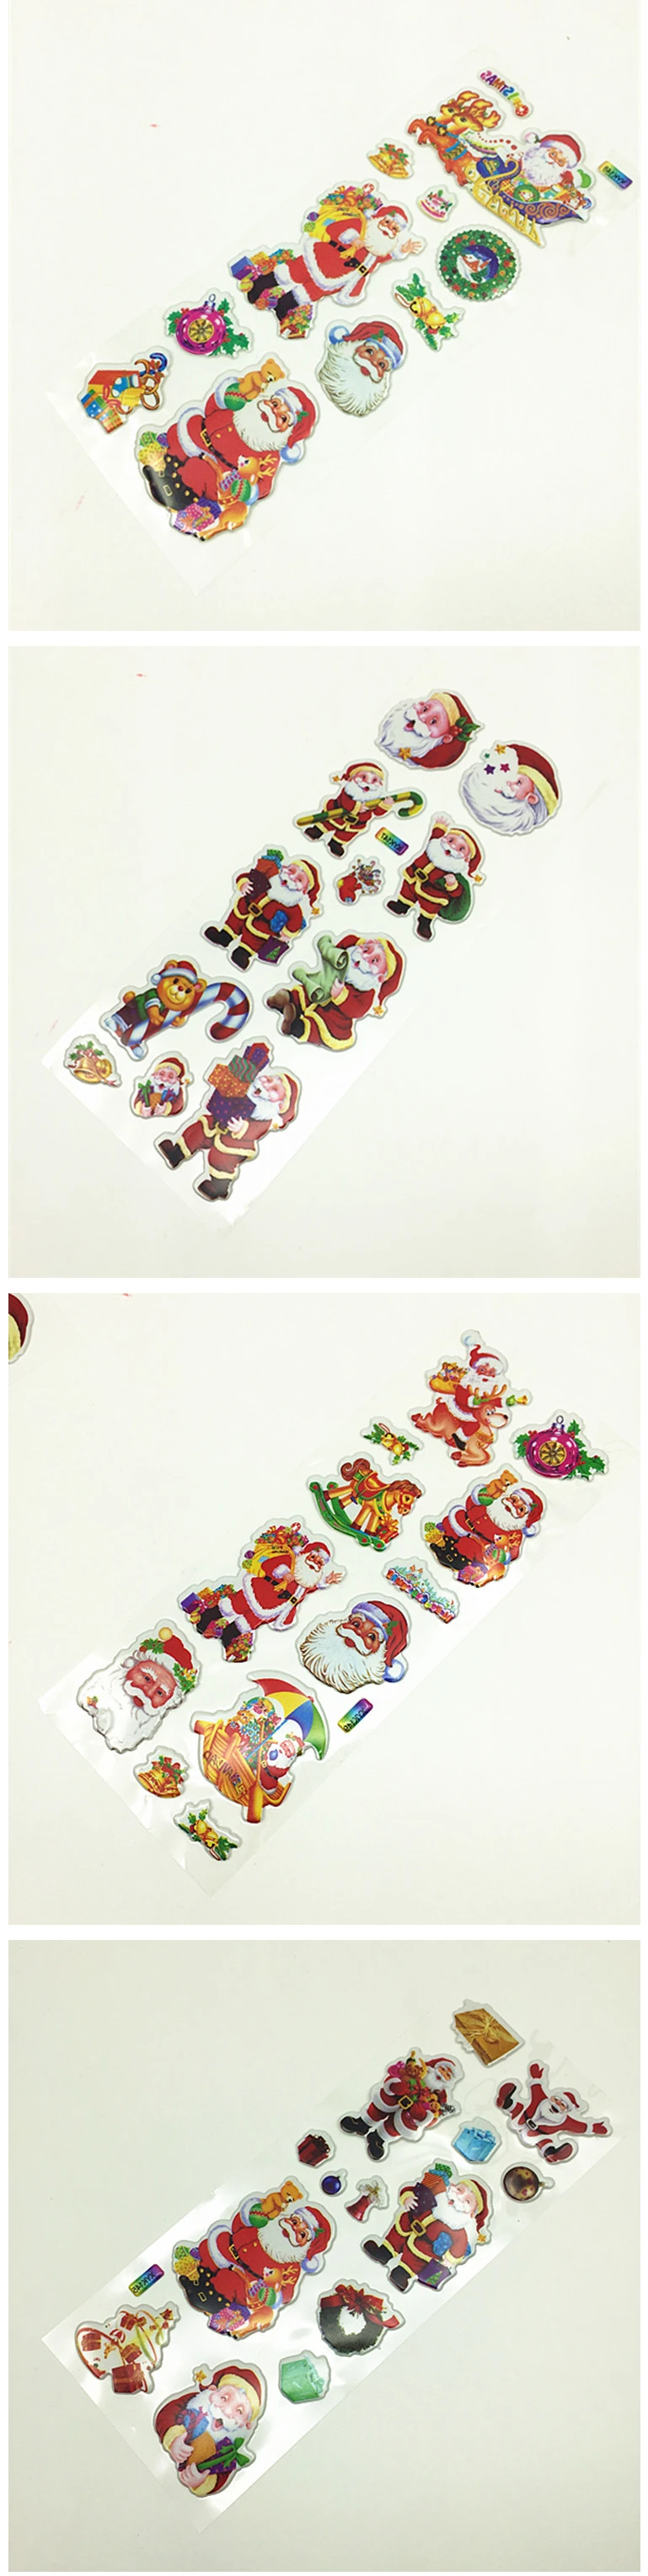 5 шт./компл. Kawaii Рождество 3D объемные наклейки Рисование рынок планировщик ежедневник дневник декоративные канцтовары наклейки ПВХ Скрапбукинг